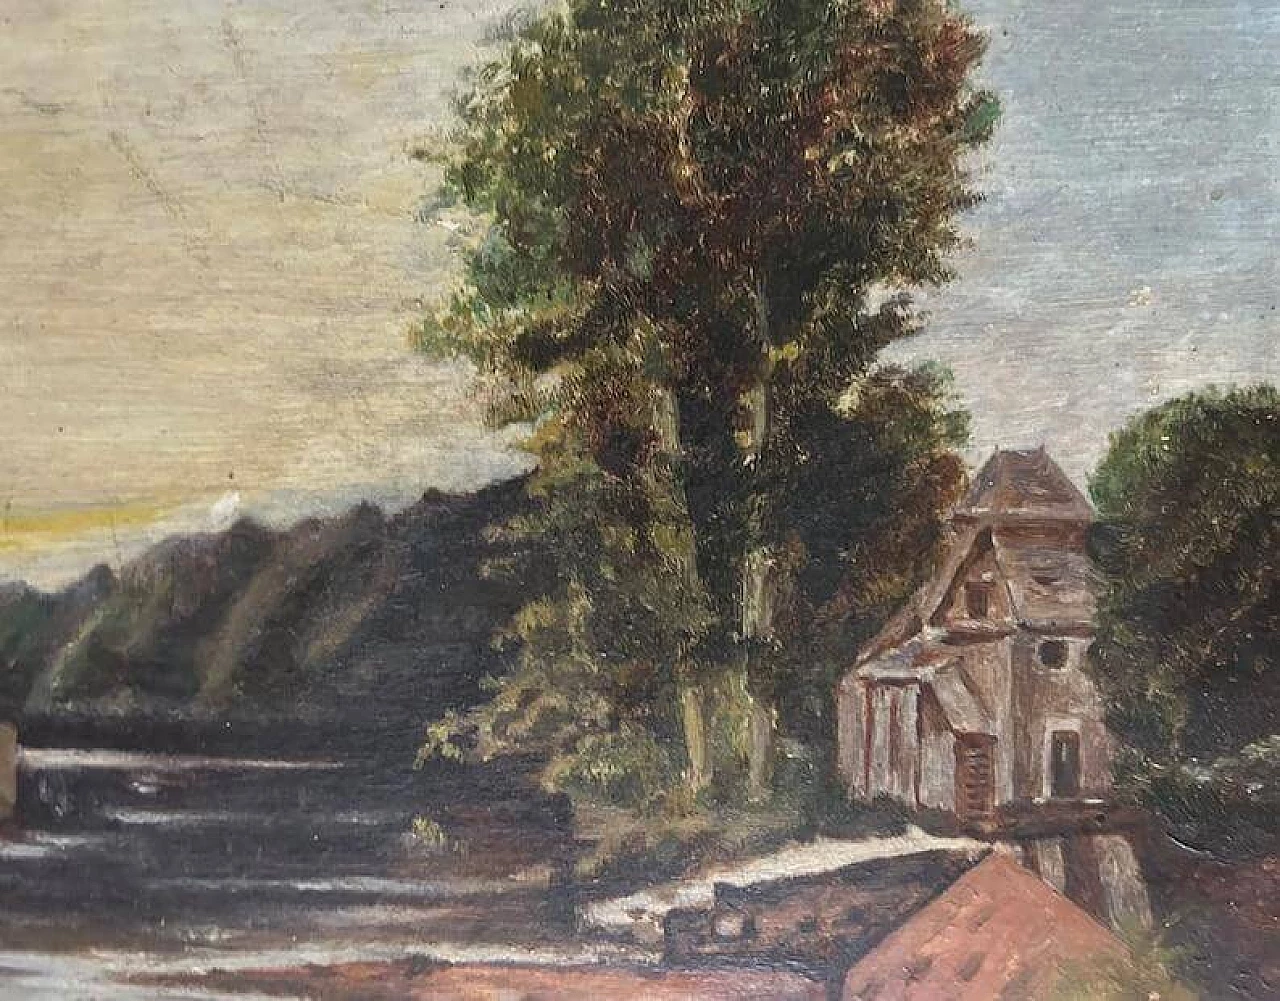 Paesaggio lacustre nello stile della Scuola di Barbizon, dipinto, anni '20 5